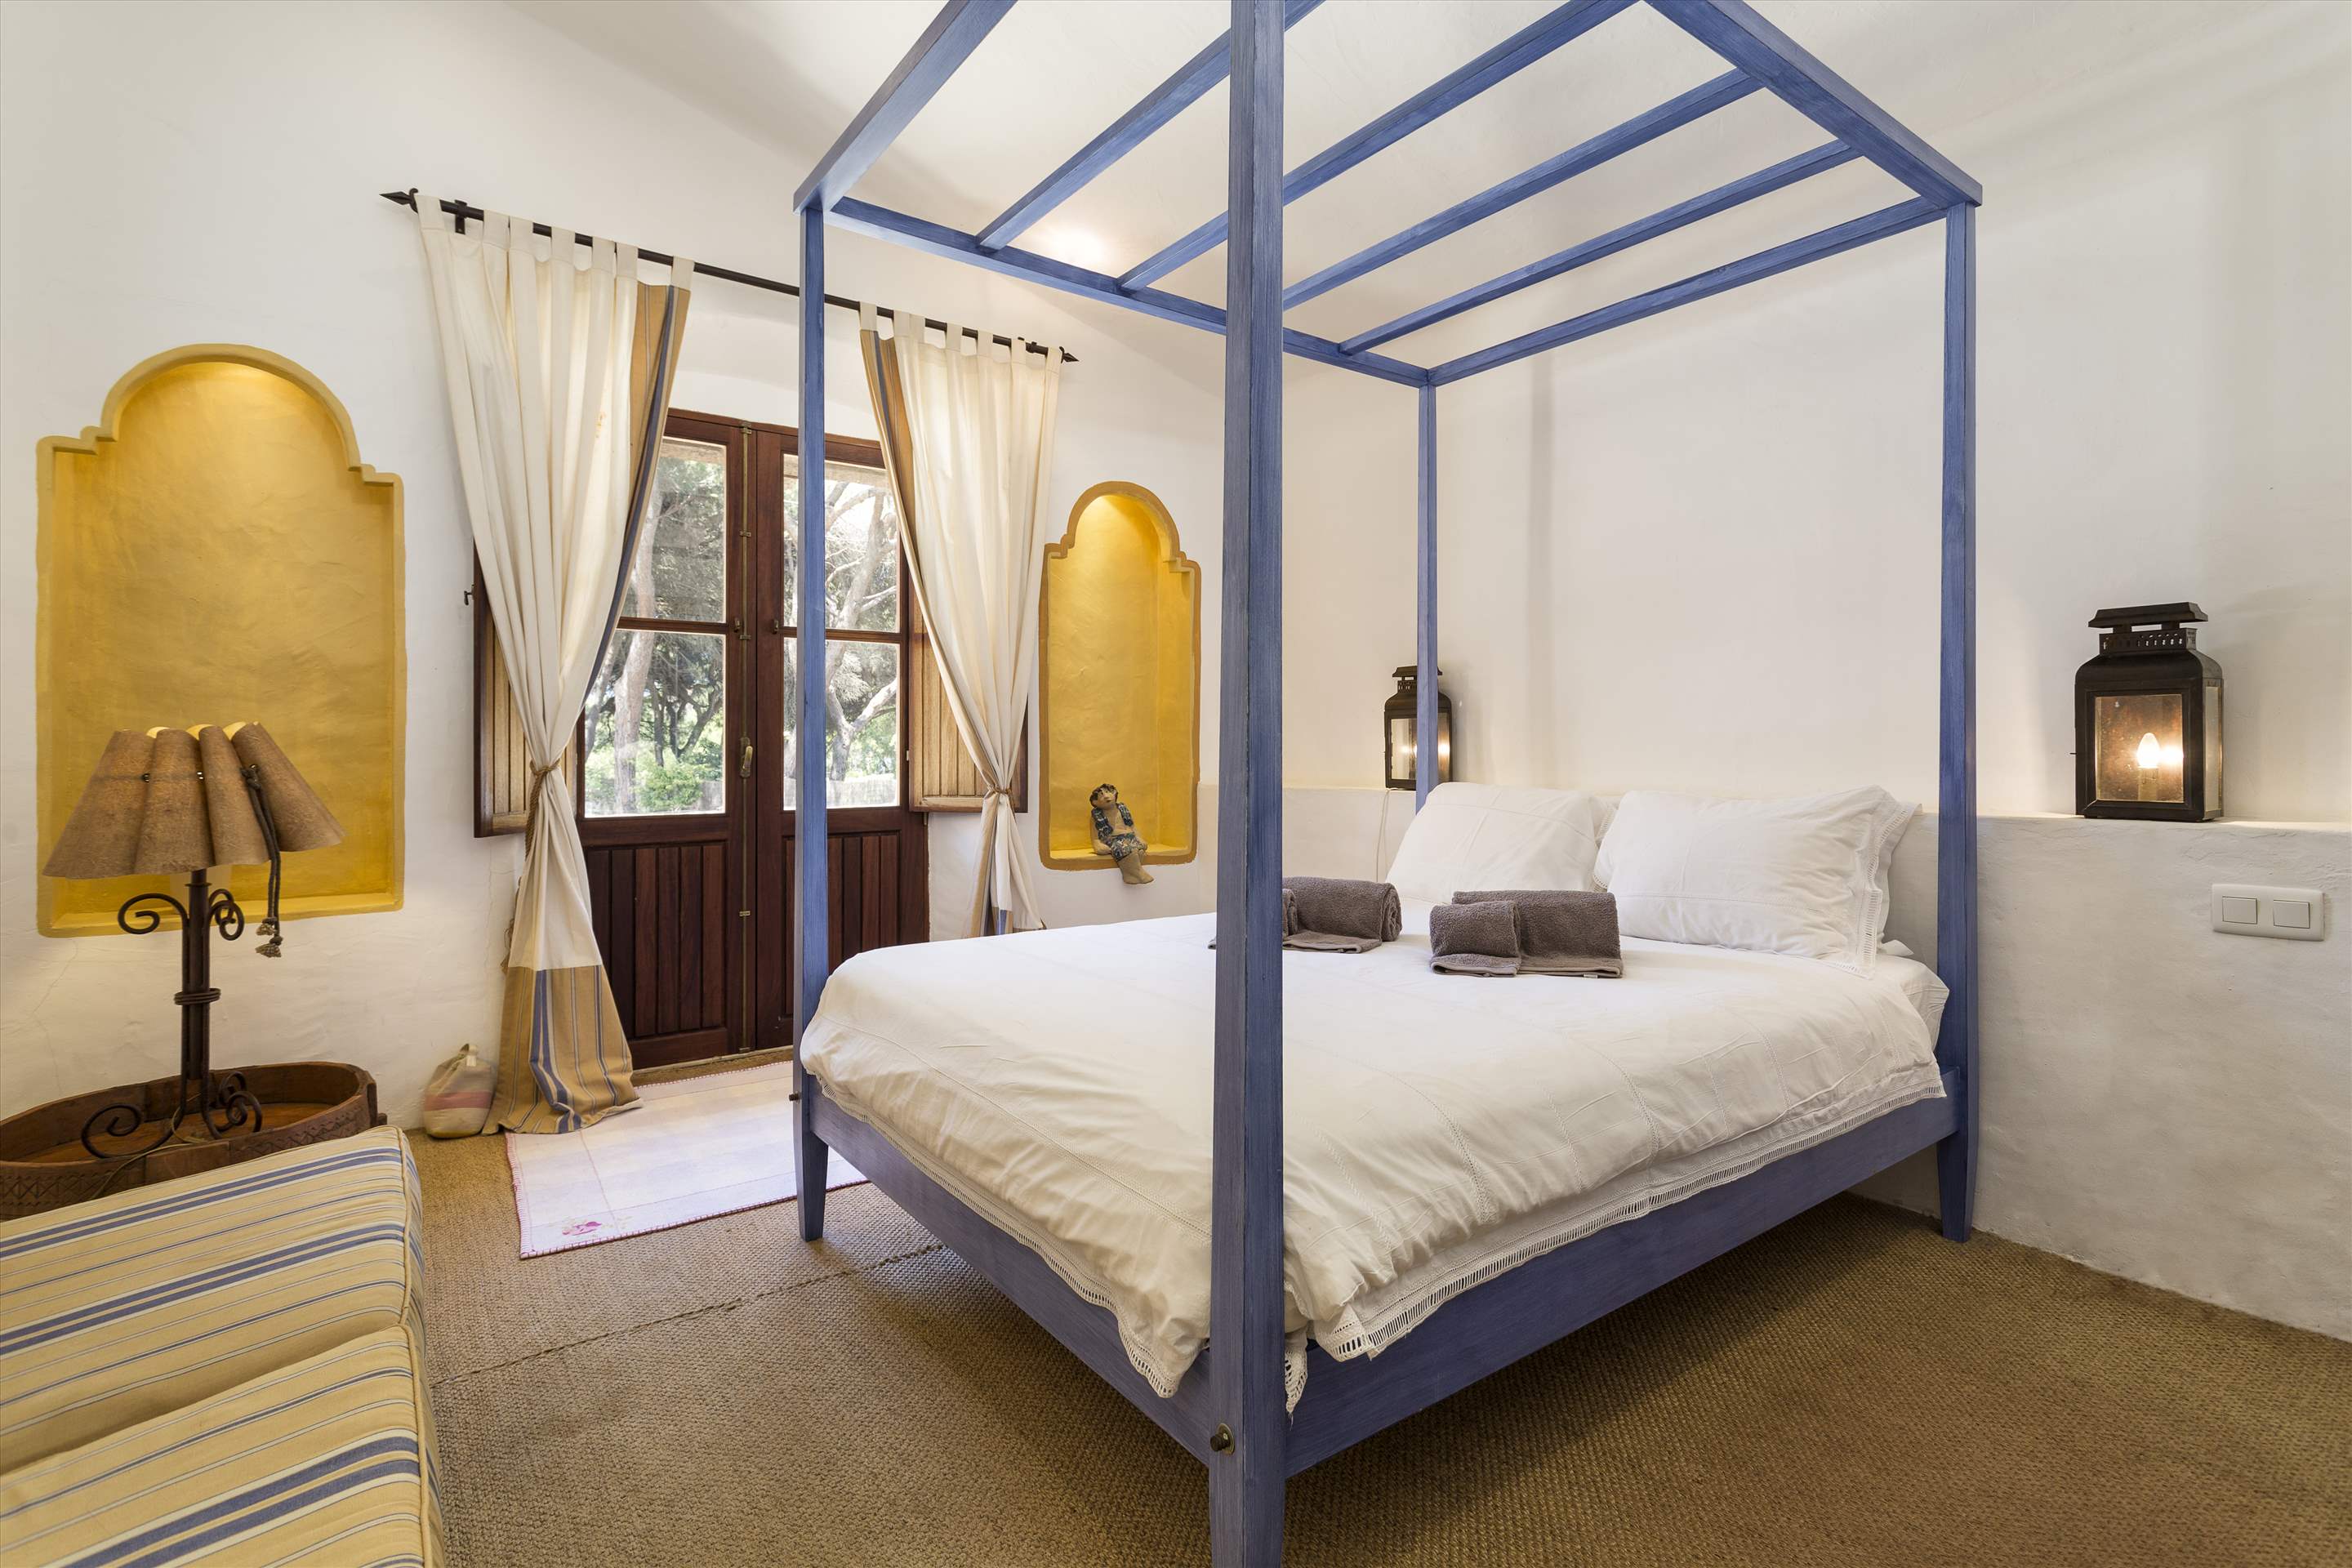 Villa Cristofina, 5 Bedroom, 5 bedroom villa in Vale do Lobo, Algarve Photo #19